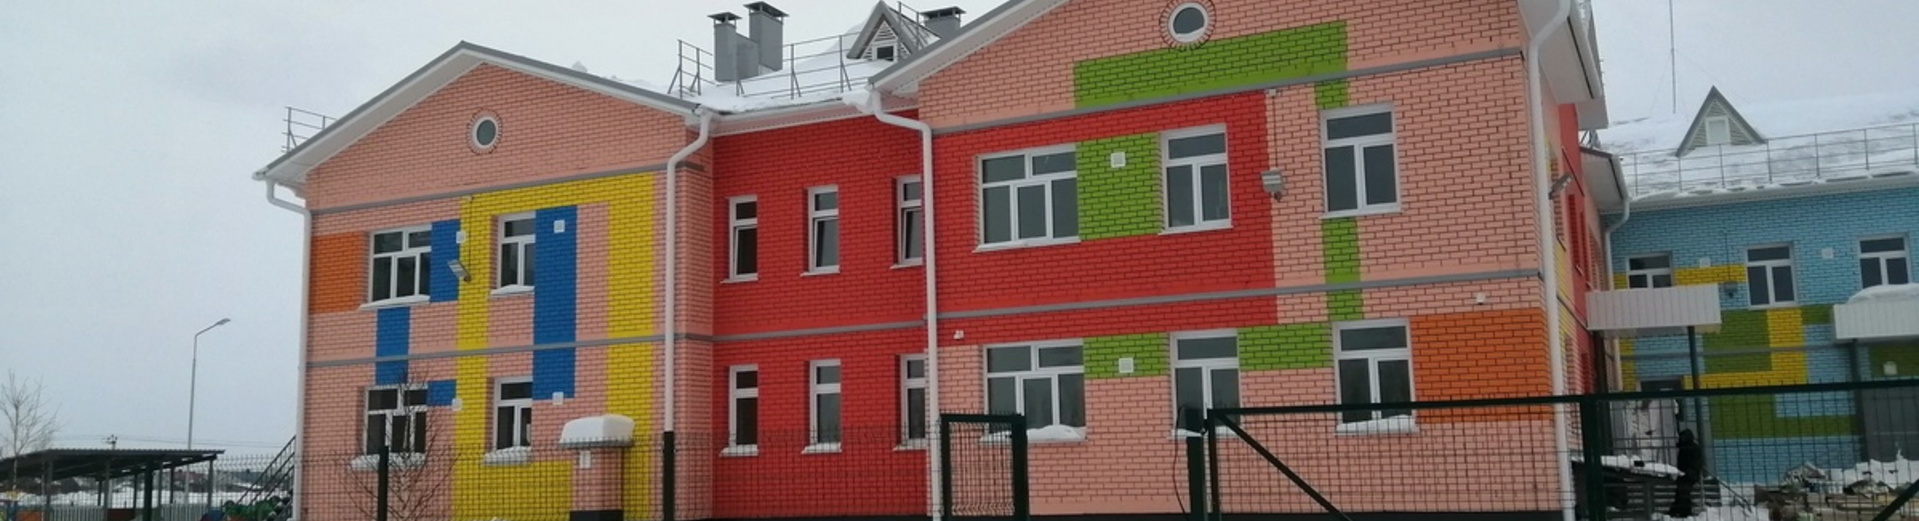 г. Новоалтайск, строительство детского сада - ясли на 280 мест